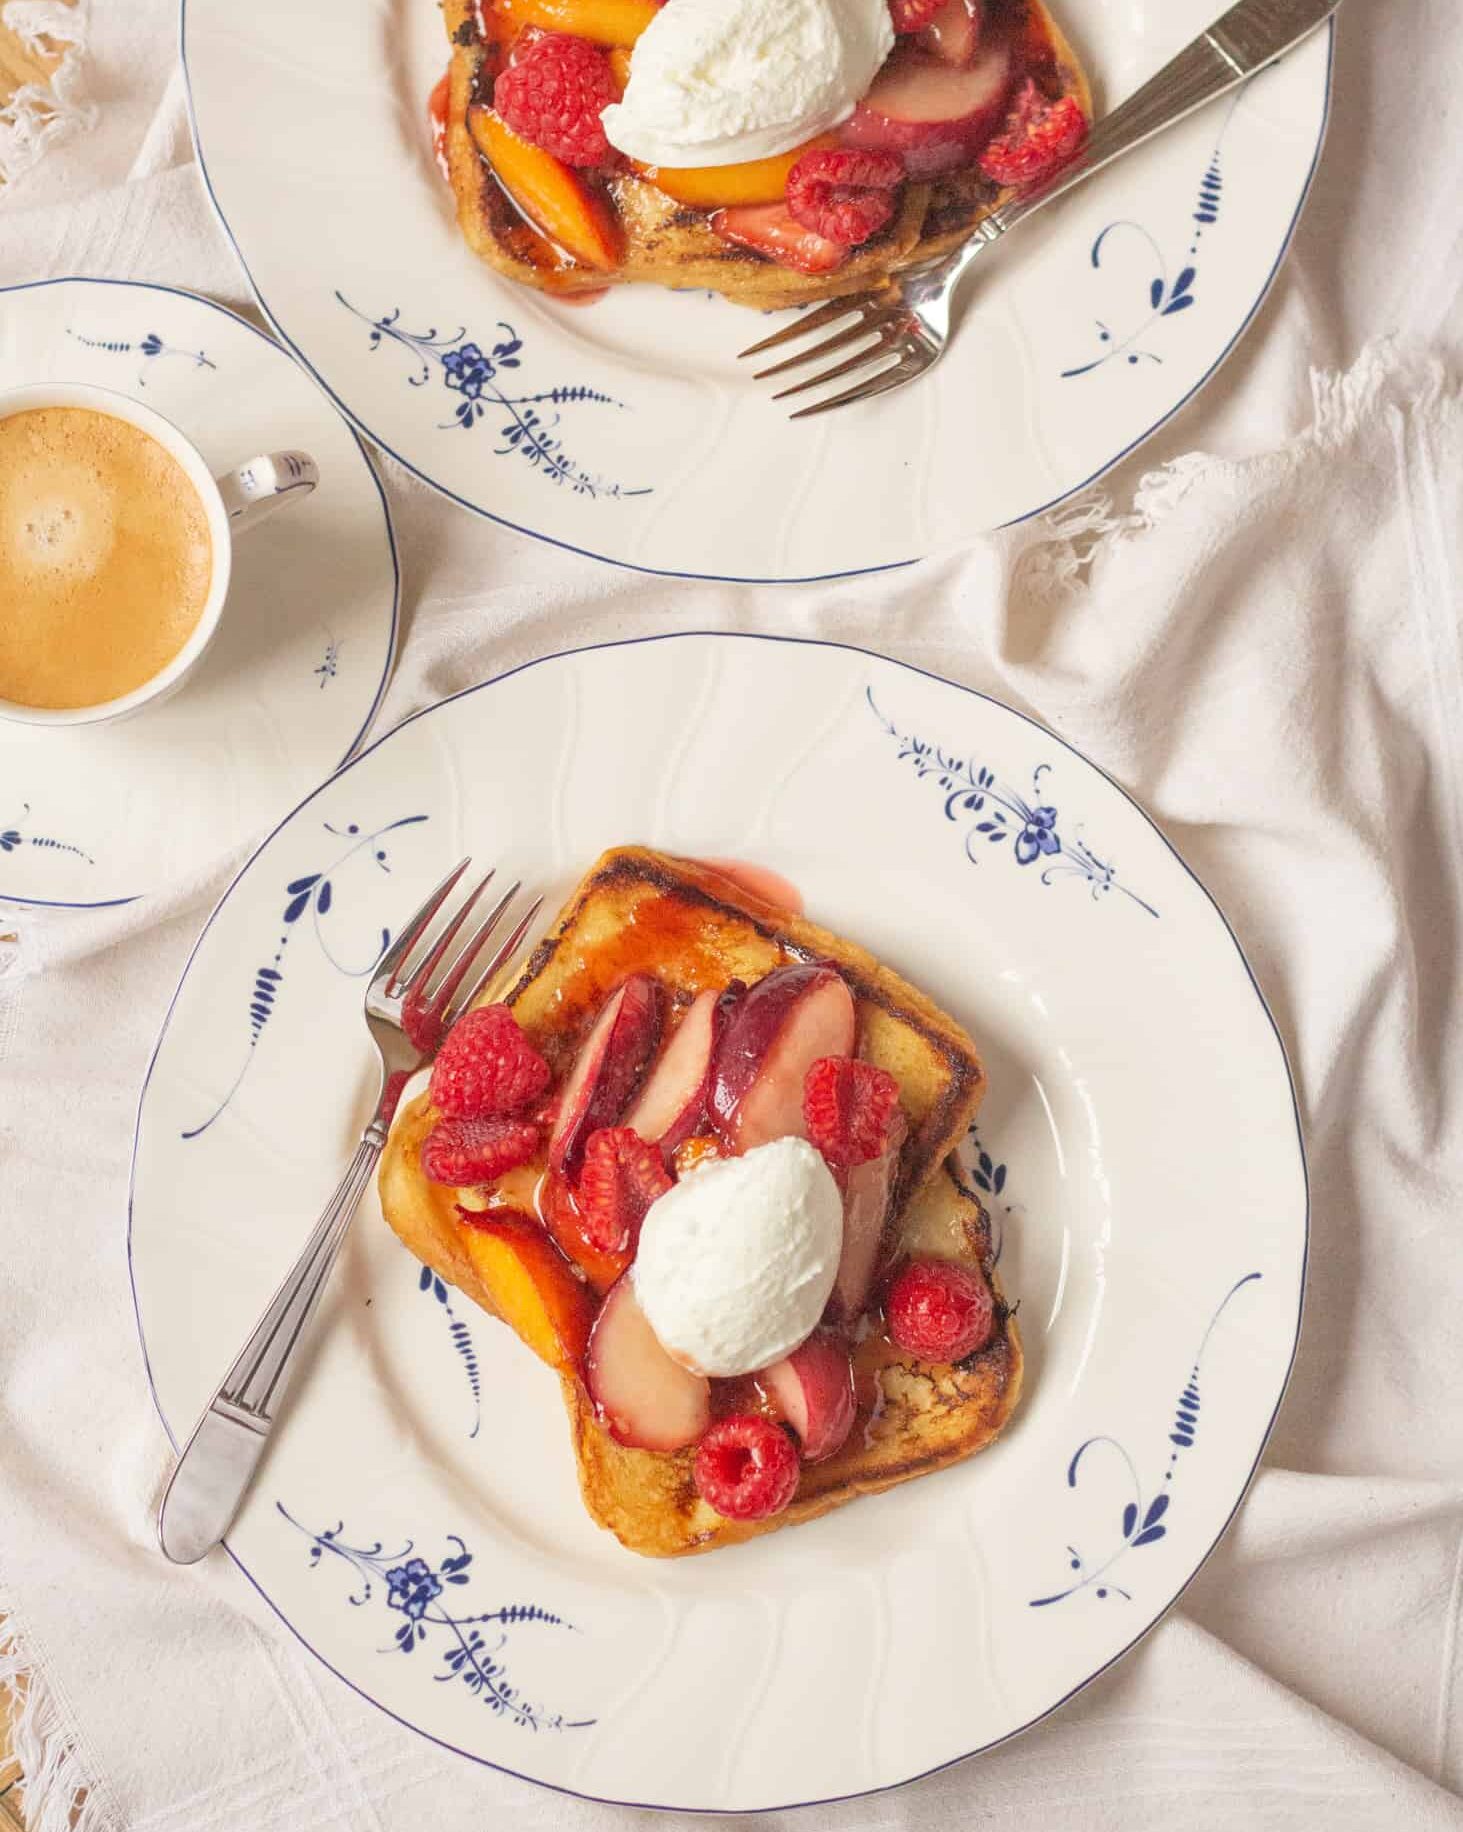 Нежные внутри, но с такой аппетитной золотистой корочкой снаружи, эти сладкие французские тосты станут вашим любимым завтраком или десертом.